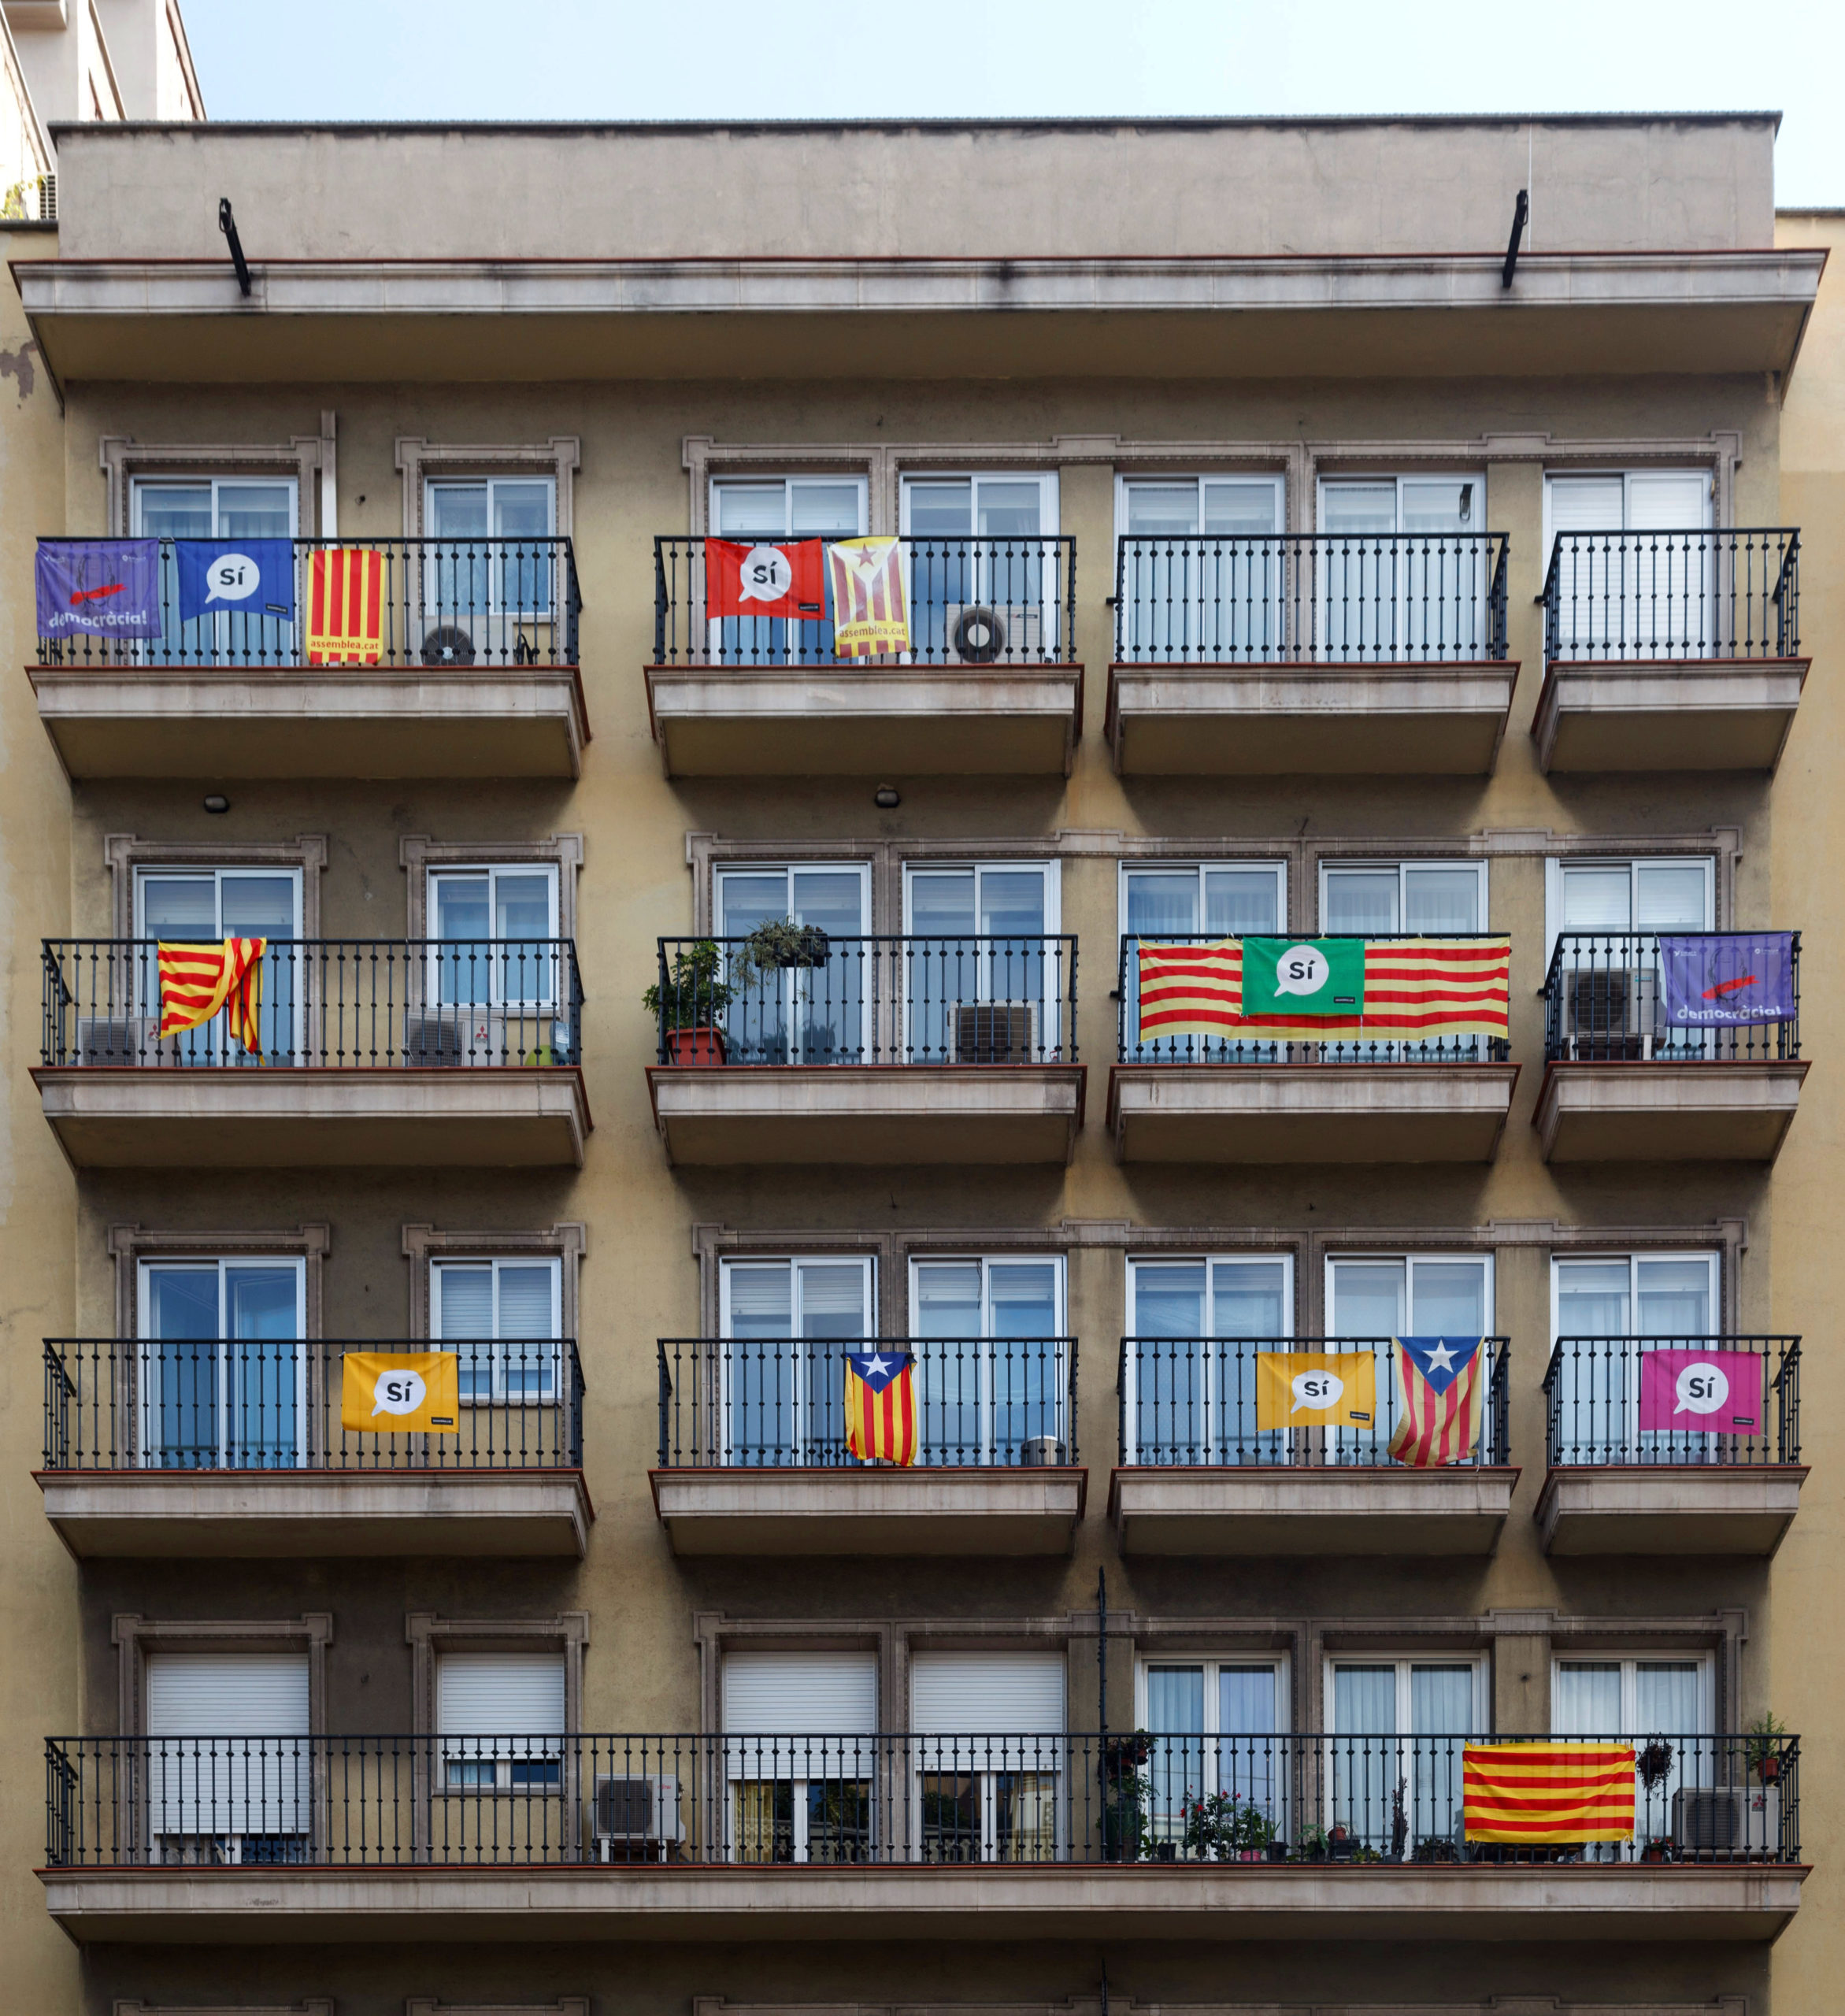 Boligblokk der ulike versjoner av det katalanske flagget henger på balkongen, mange har også hengt opp en "si" banner.